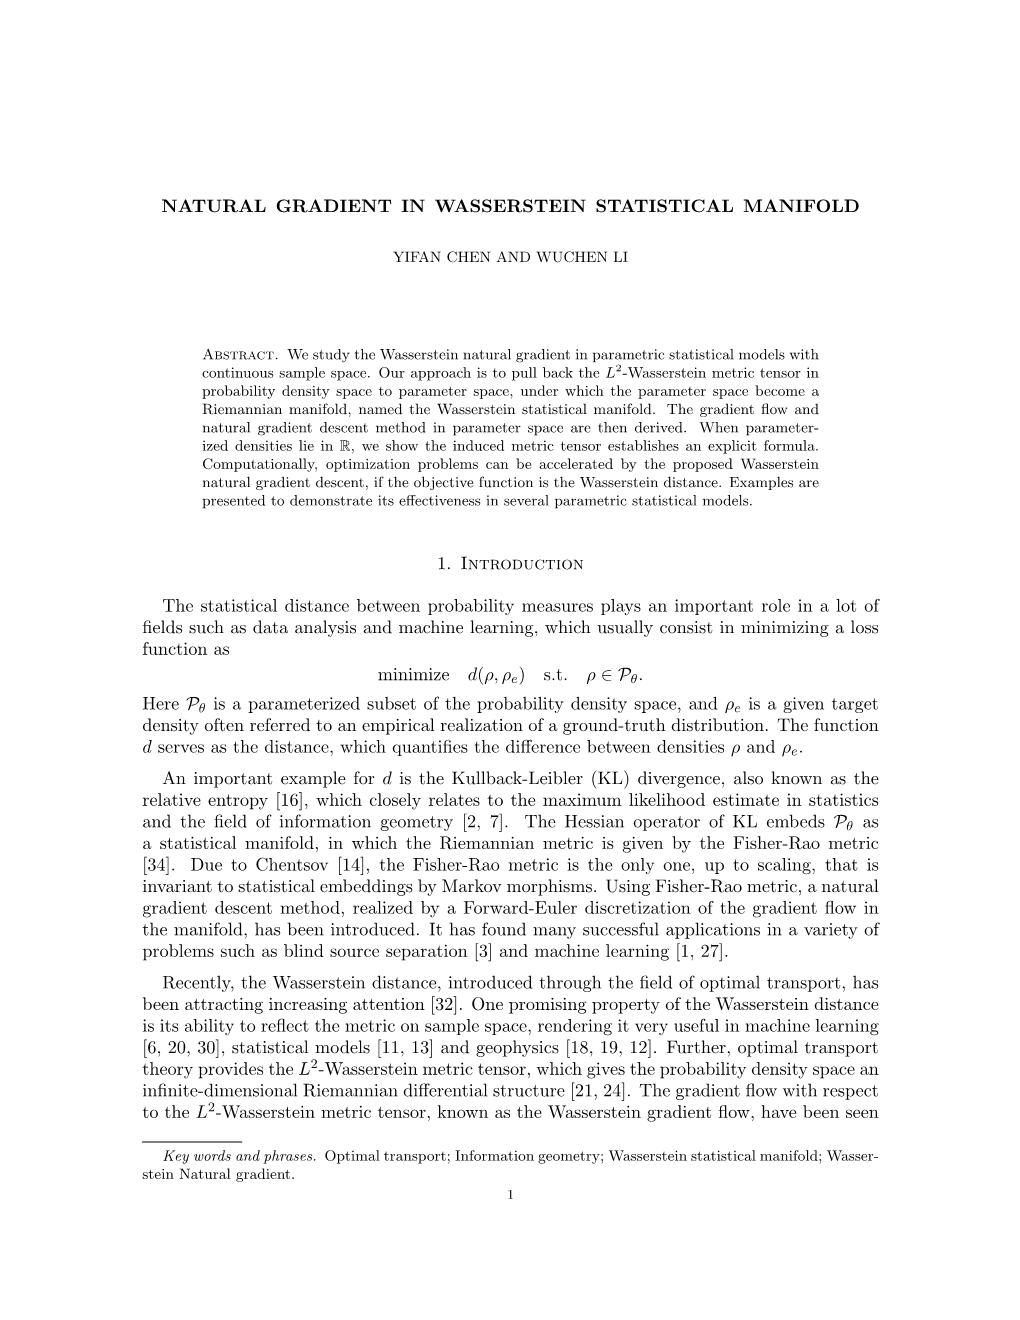 Natural Gradient in Wasserstein Statistical Manifold